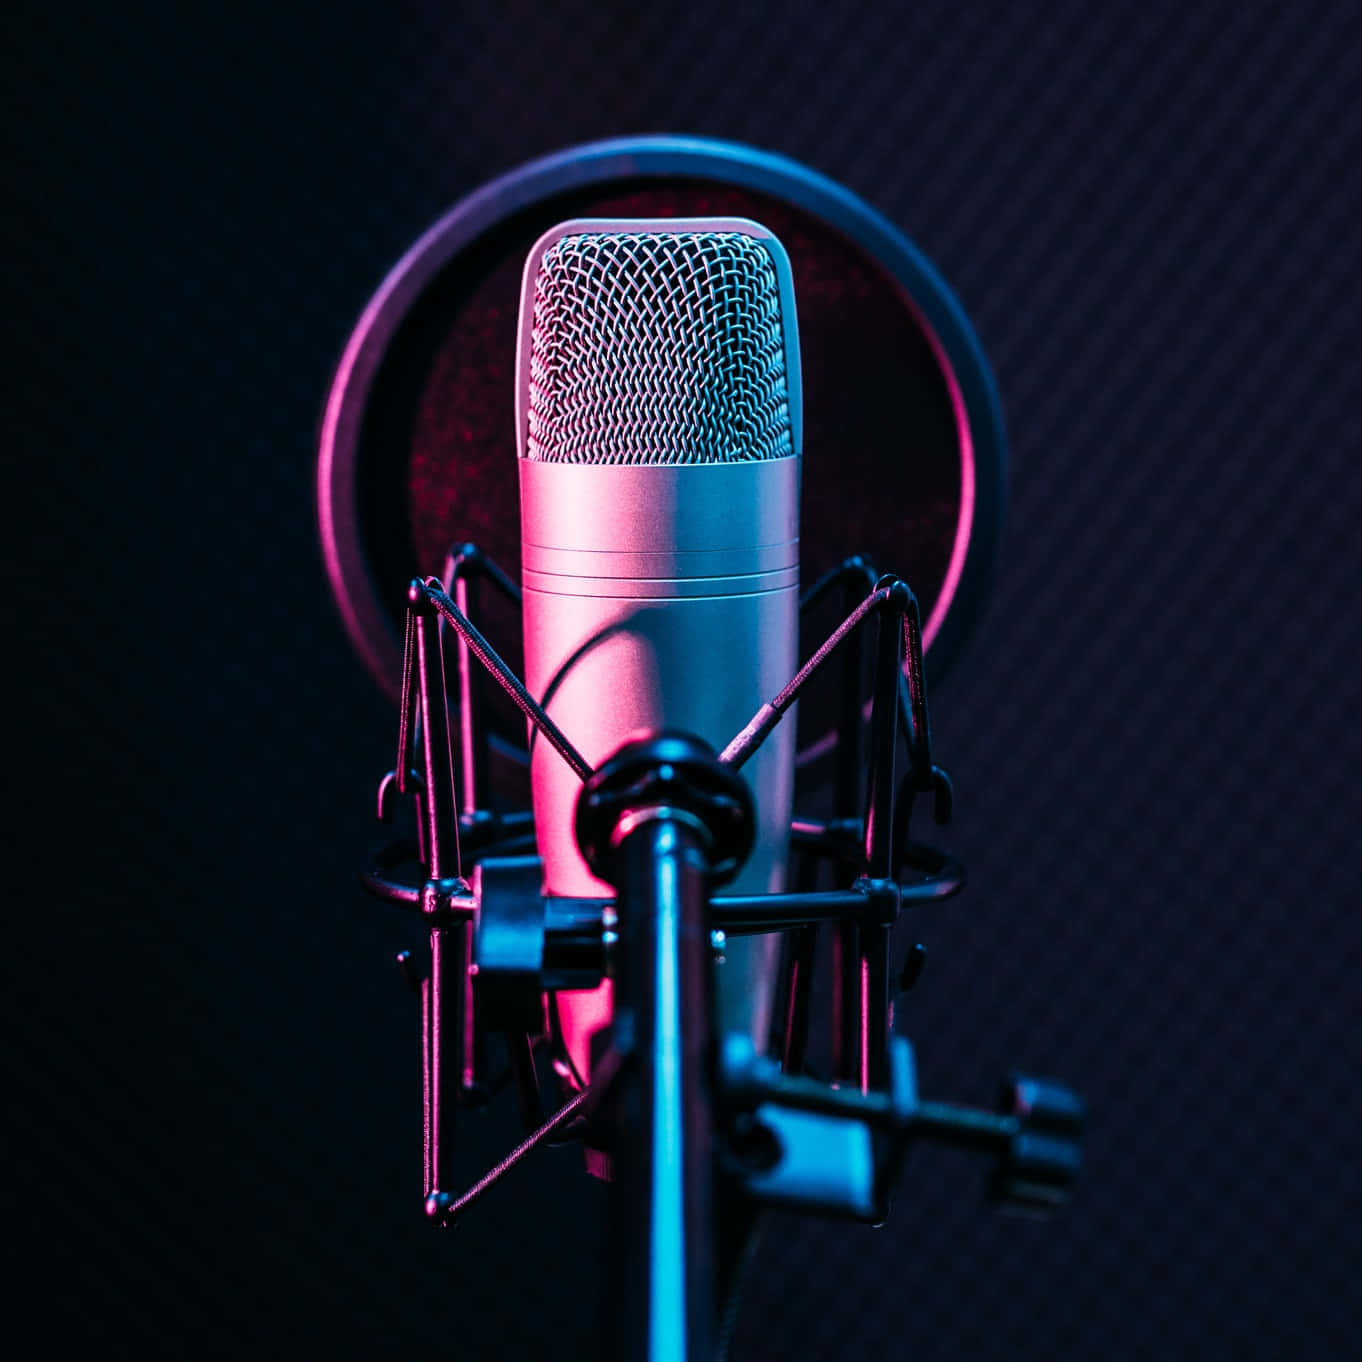 Hintergrundbildmit Pinkem Lichteffekt Für Computer Oder Mobilgerät Mit Podcast-mikrofon Im Portrait-stil.